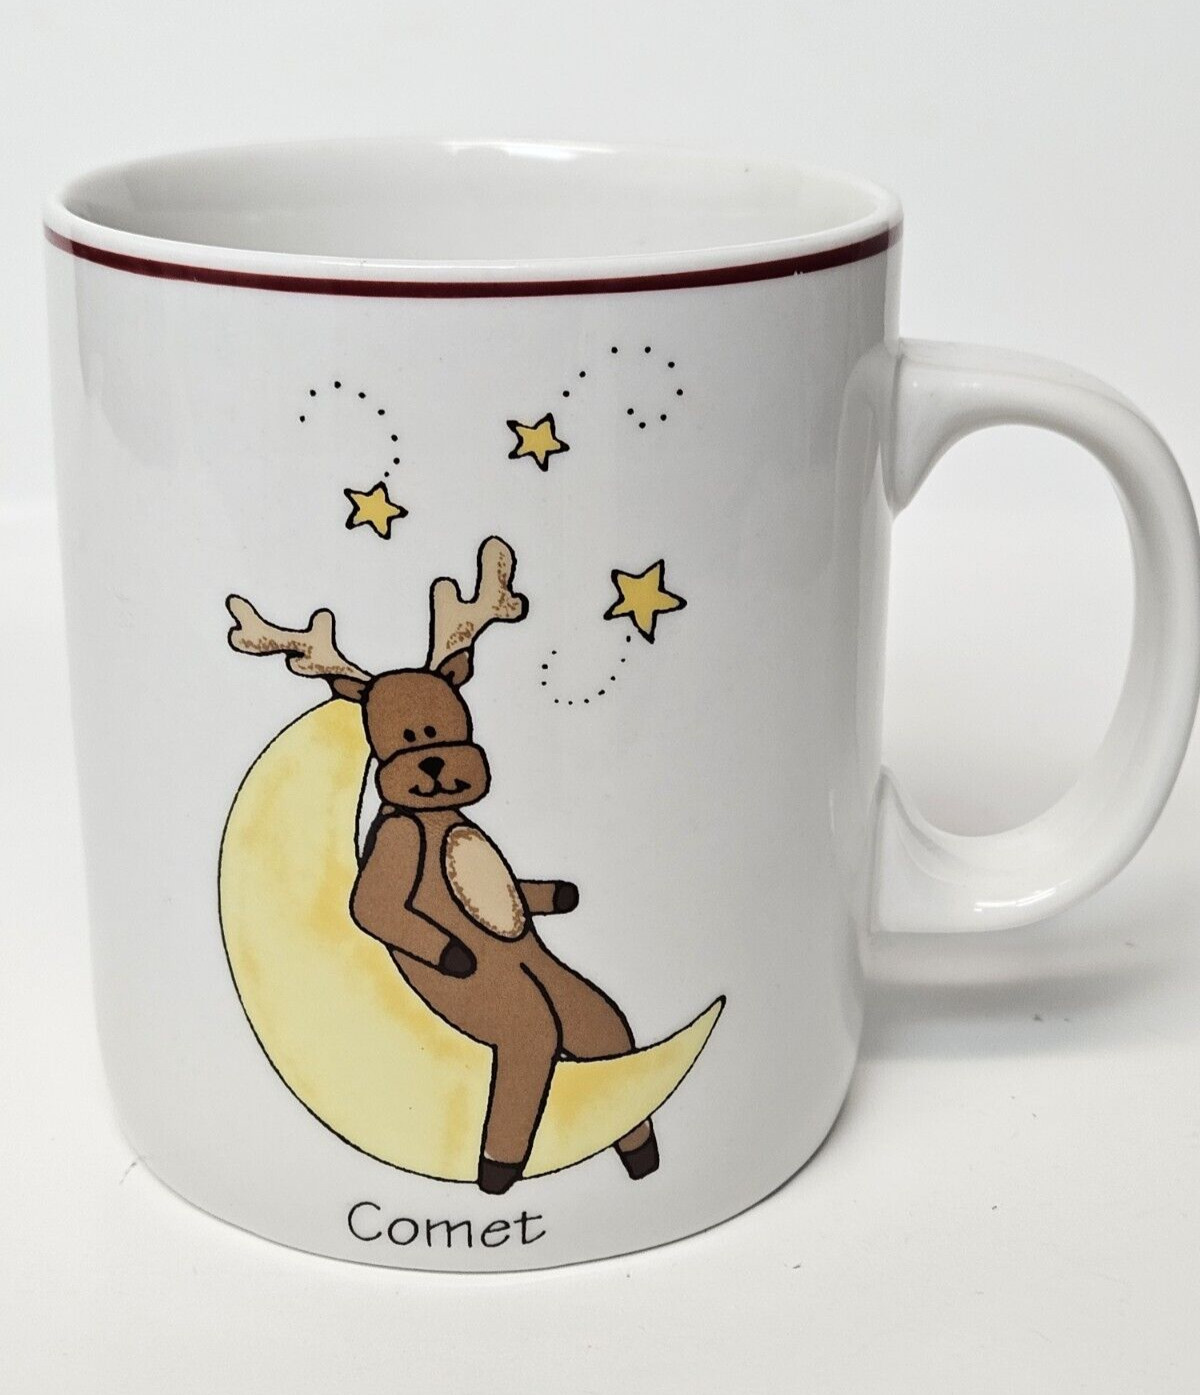 LTD Commodities Christmas Mug Comet Reindeer Stars Red Trim Holiday Whimsical